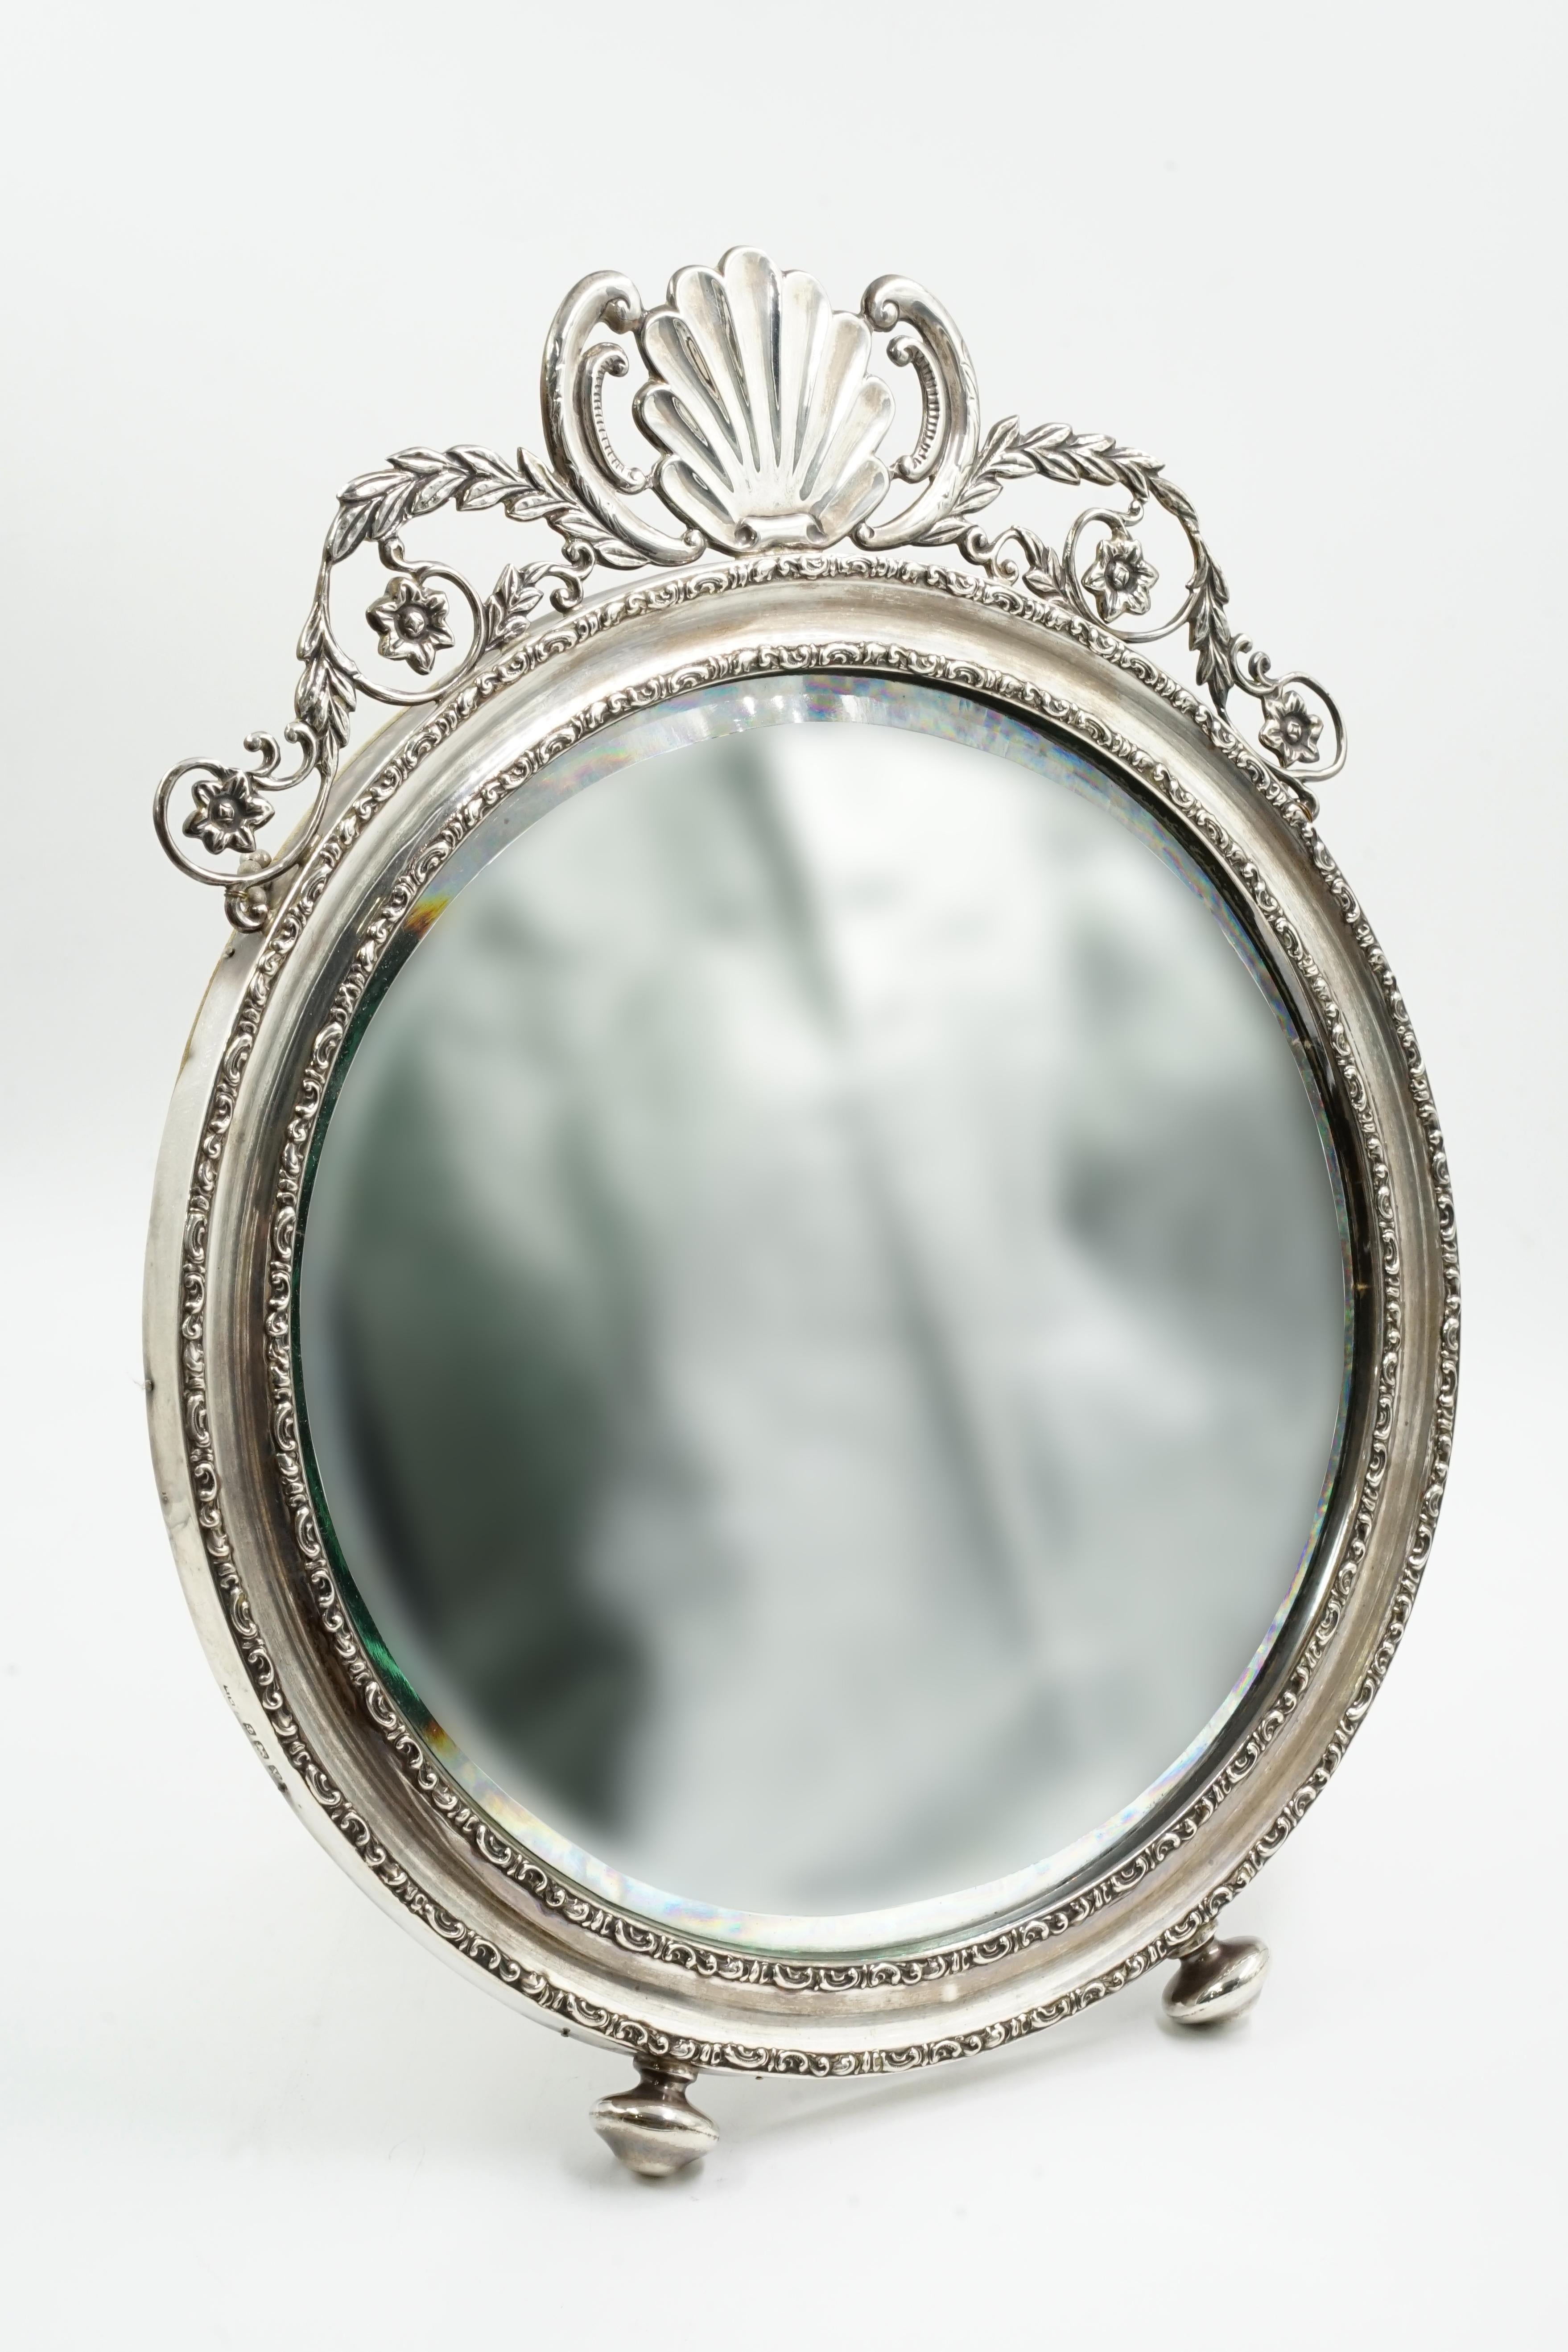 Miroir victorien en argent
Ce miroir peut également être accroché au mur.
Magnifique miroir anglais
Circa 1940 Origine Angleterre
Il comporte deux supports avant et un support arrière doublé de velours côtelé.
Il est également doté d'une chaîne au